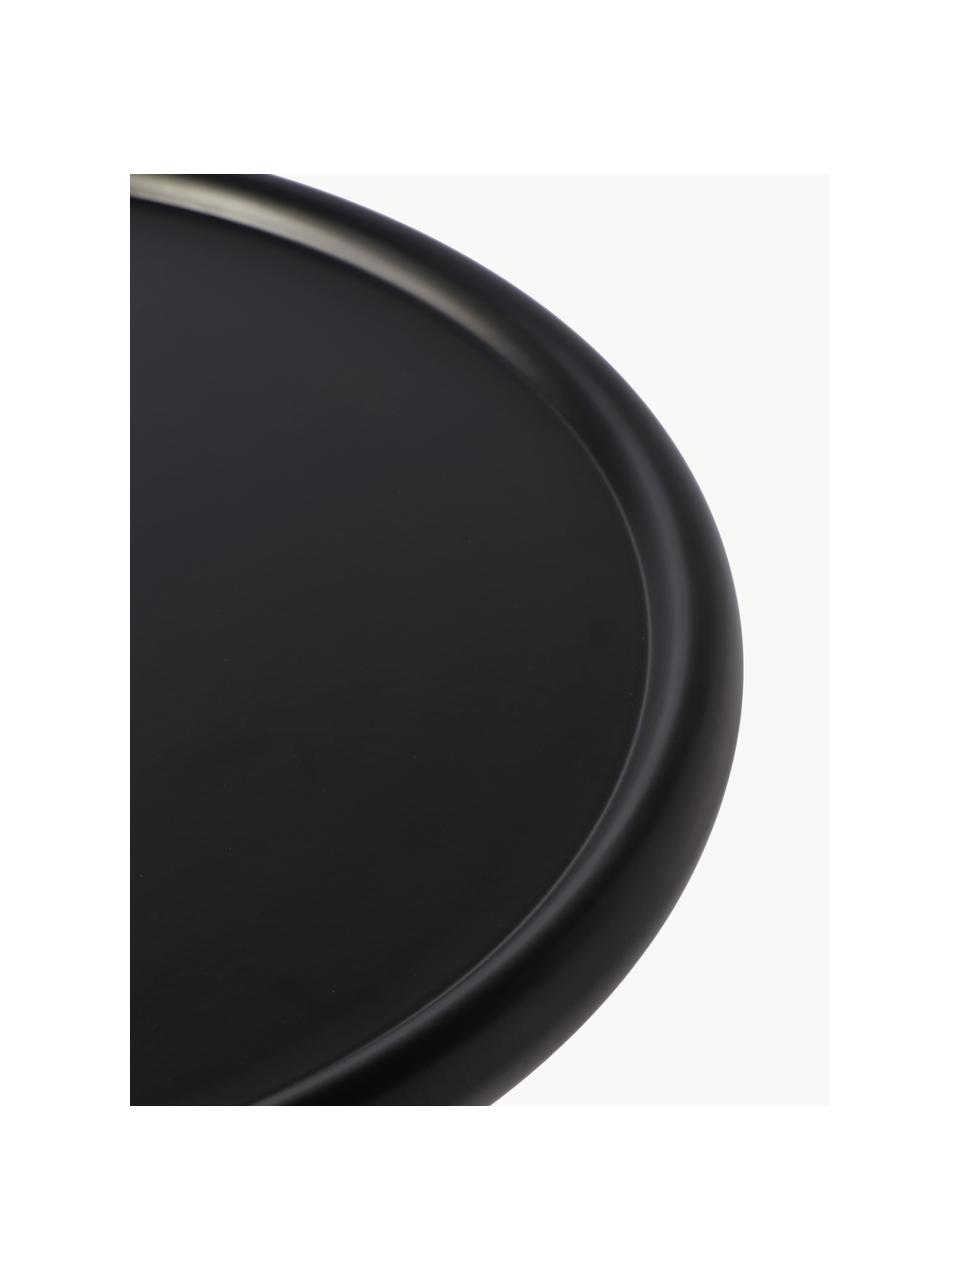 Runder Beistelltisch Twister, Aluminium, pulverbeschichtet, Schwarz, Ø 46 x H 56 cm